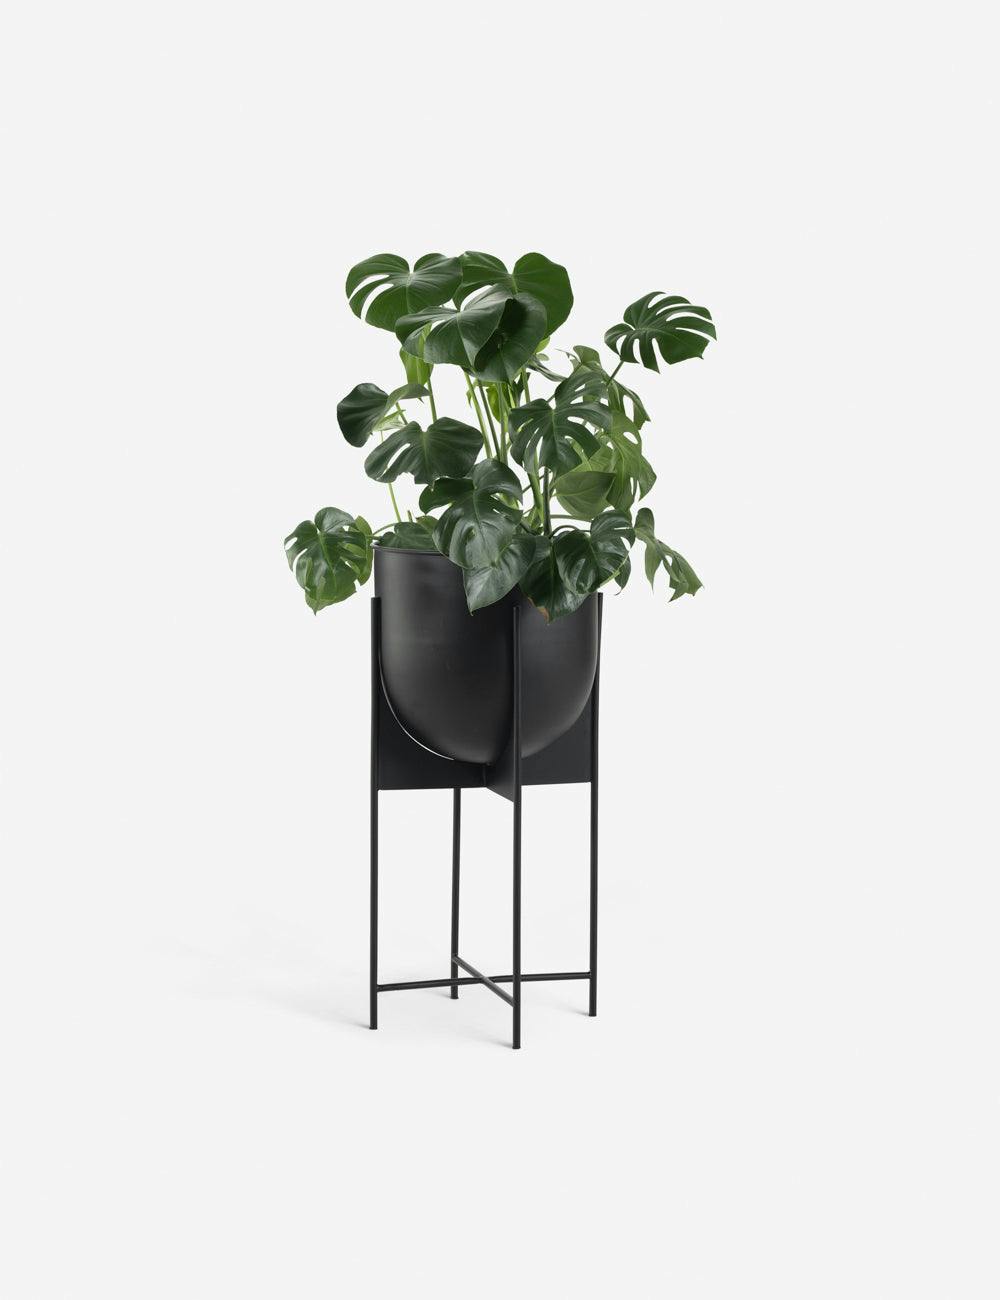 Elroy Sleek Black Iron Indoor/Outdoor Planter, 15"x30.5"